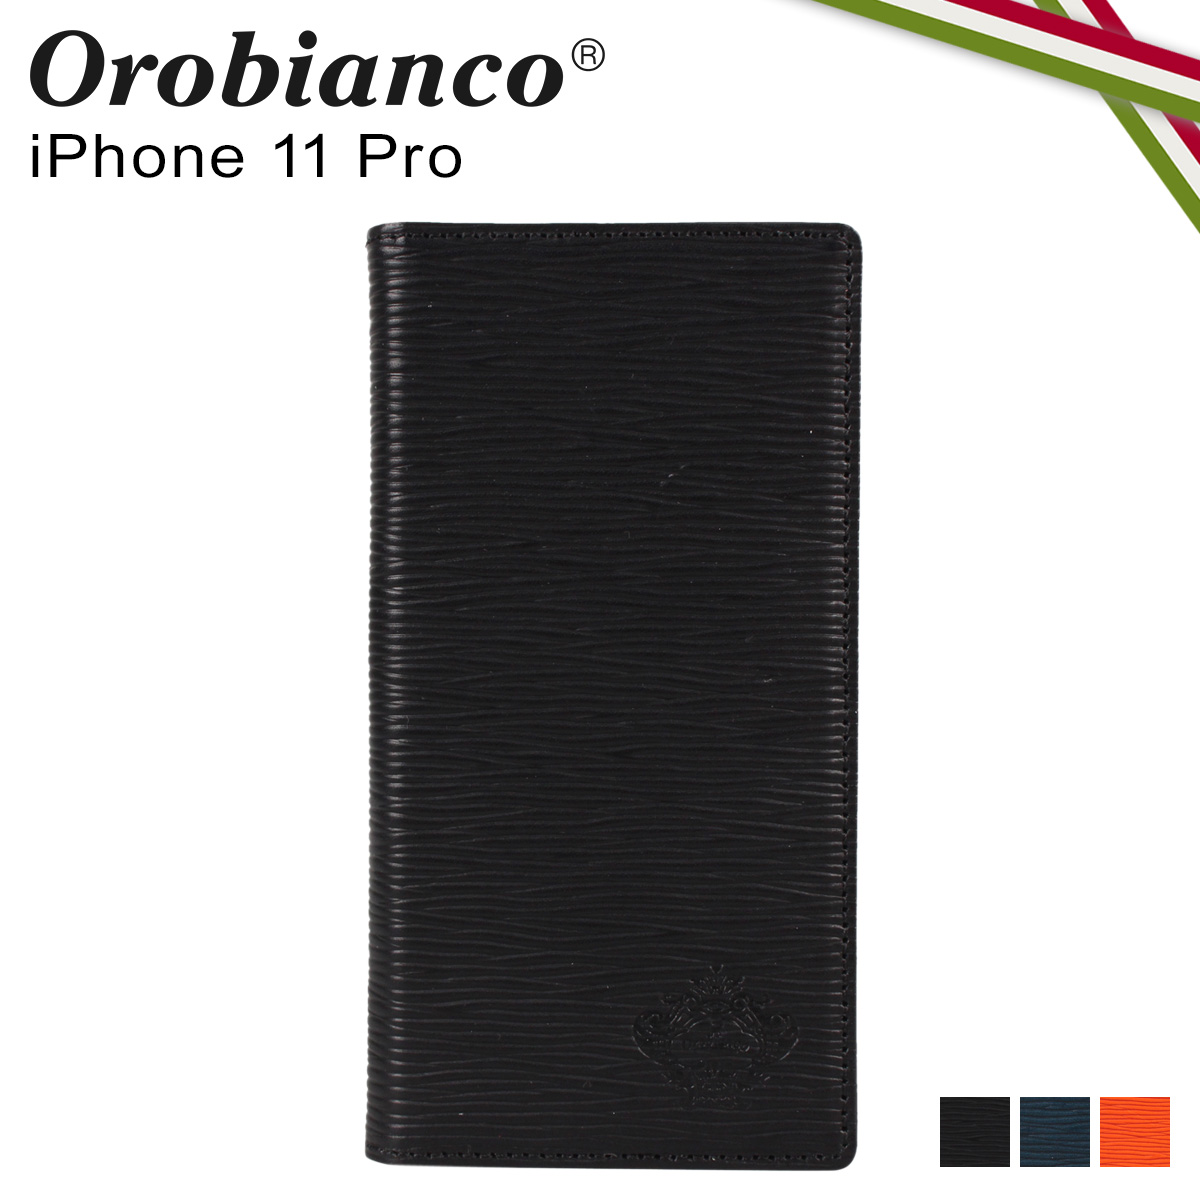 好評 Orobianco オロビアンコ Iphone11 Pro ケース スマホ 携帯 手帳型 アイフォン メンズ レディース Onda Book Type Smartphone Case ブラック ネイビー オレンジ 黒 Orip 0006 11prow 安心の定価販売 Kkhsou Ac In